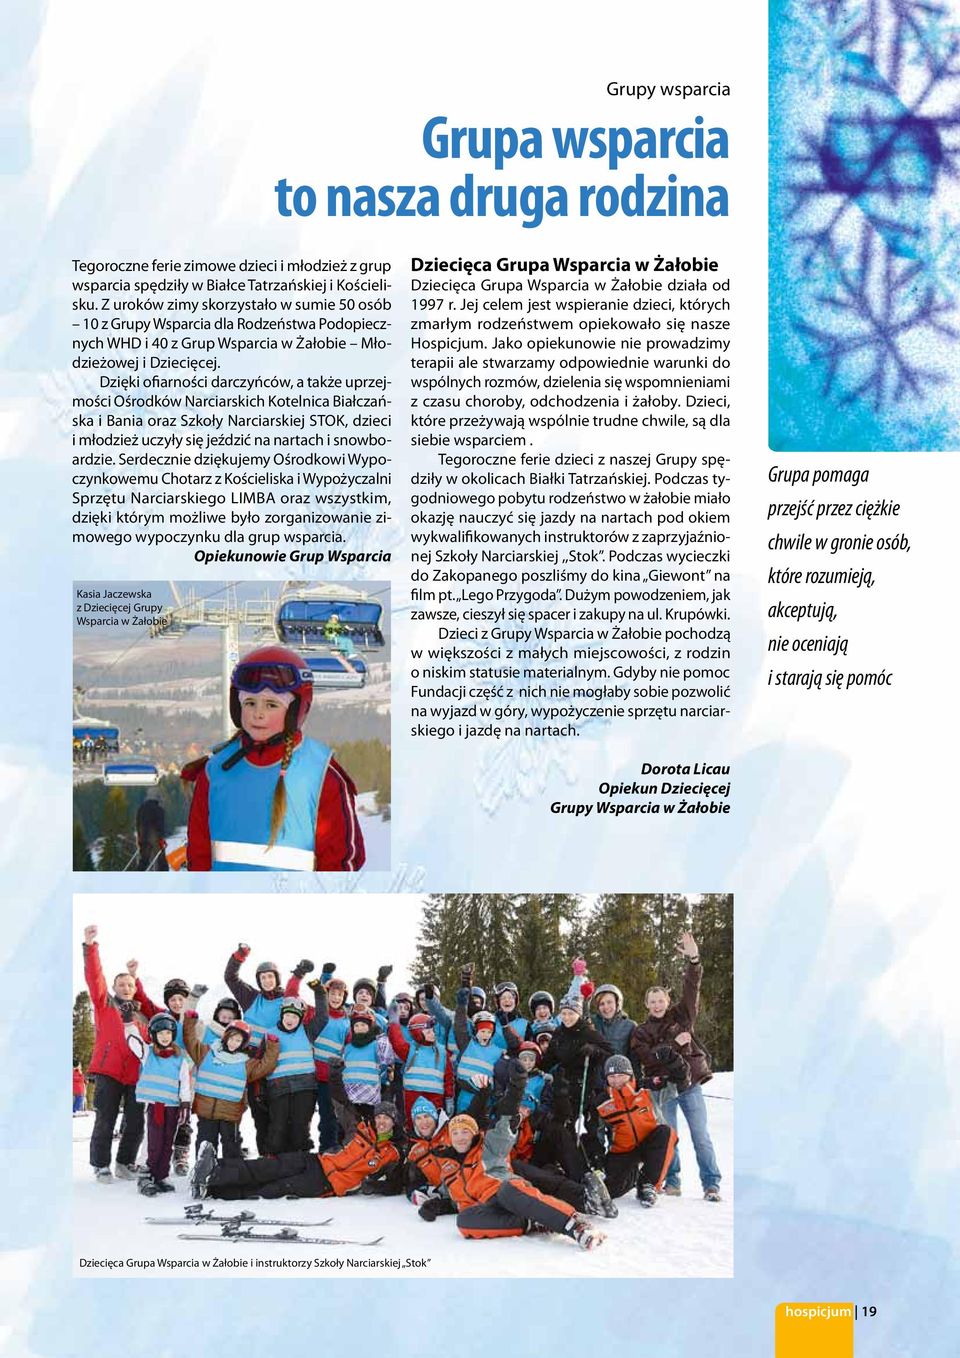 Dzięki ofiarności darczyńców, a także uprzejmości Ośrodków Narciarskich Kotelnica Białczańska i Bania oraz Szkoły Narciarskiej STOK, dzieci i młodzież uczyły się jeździć na nartach i snowboardzie.